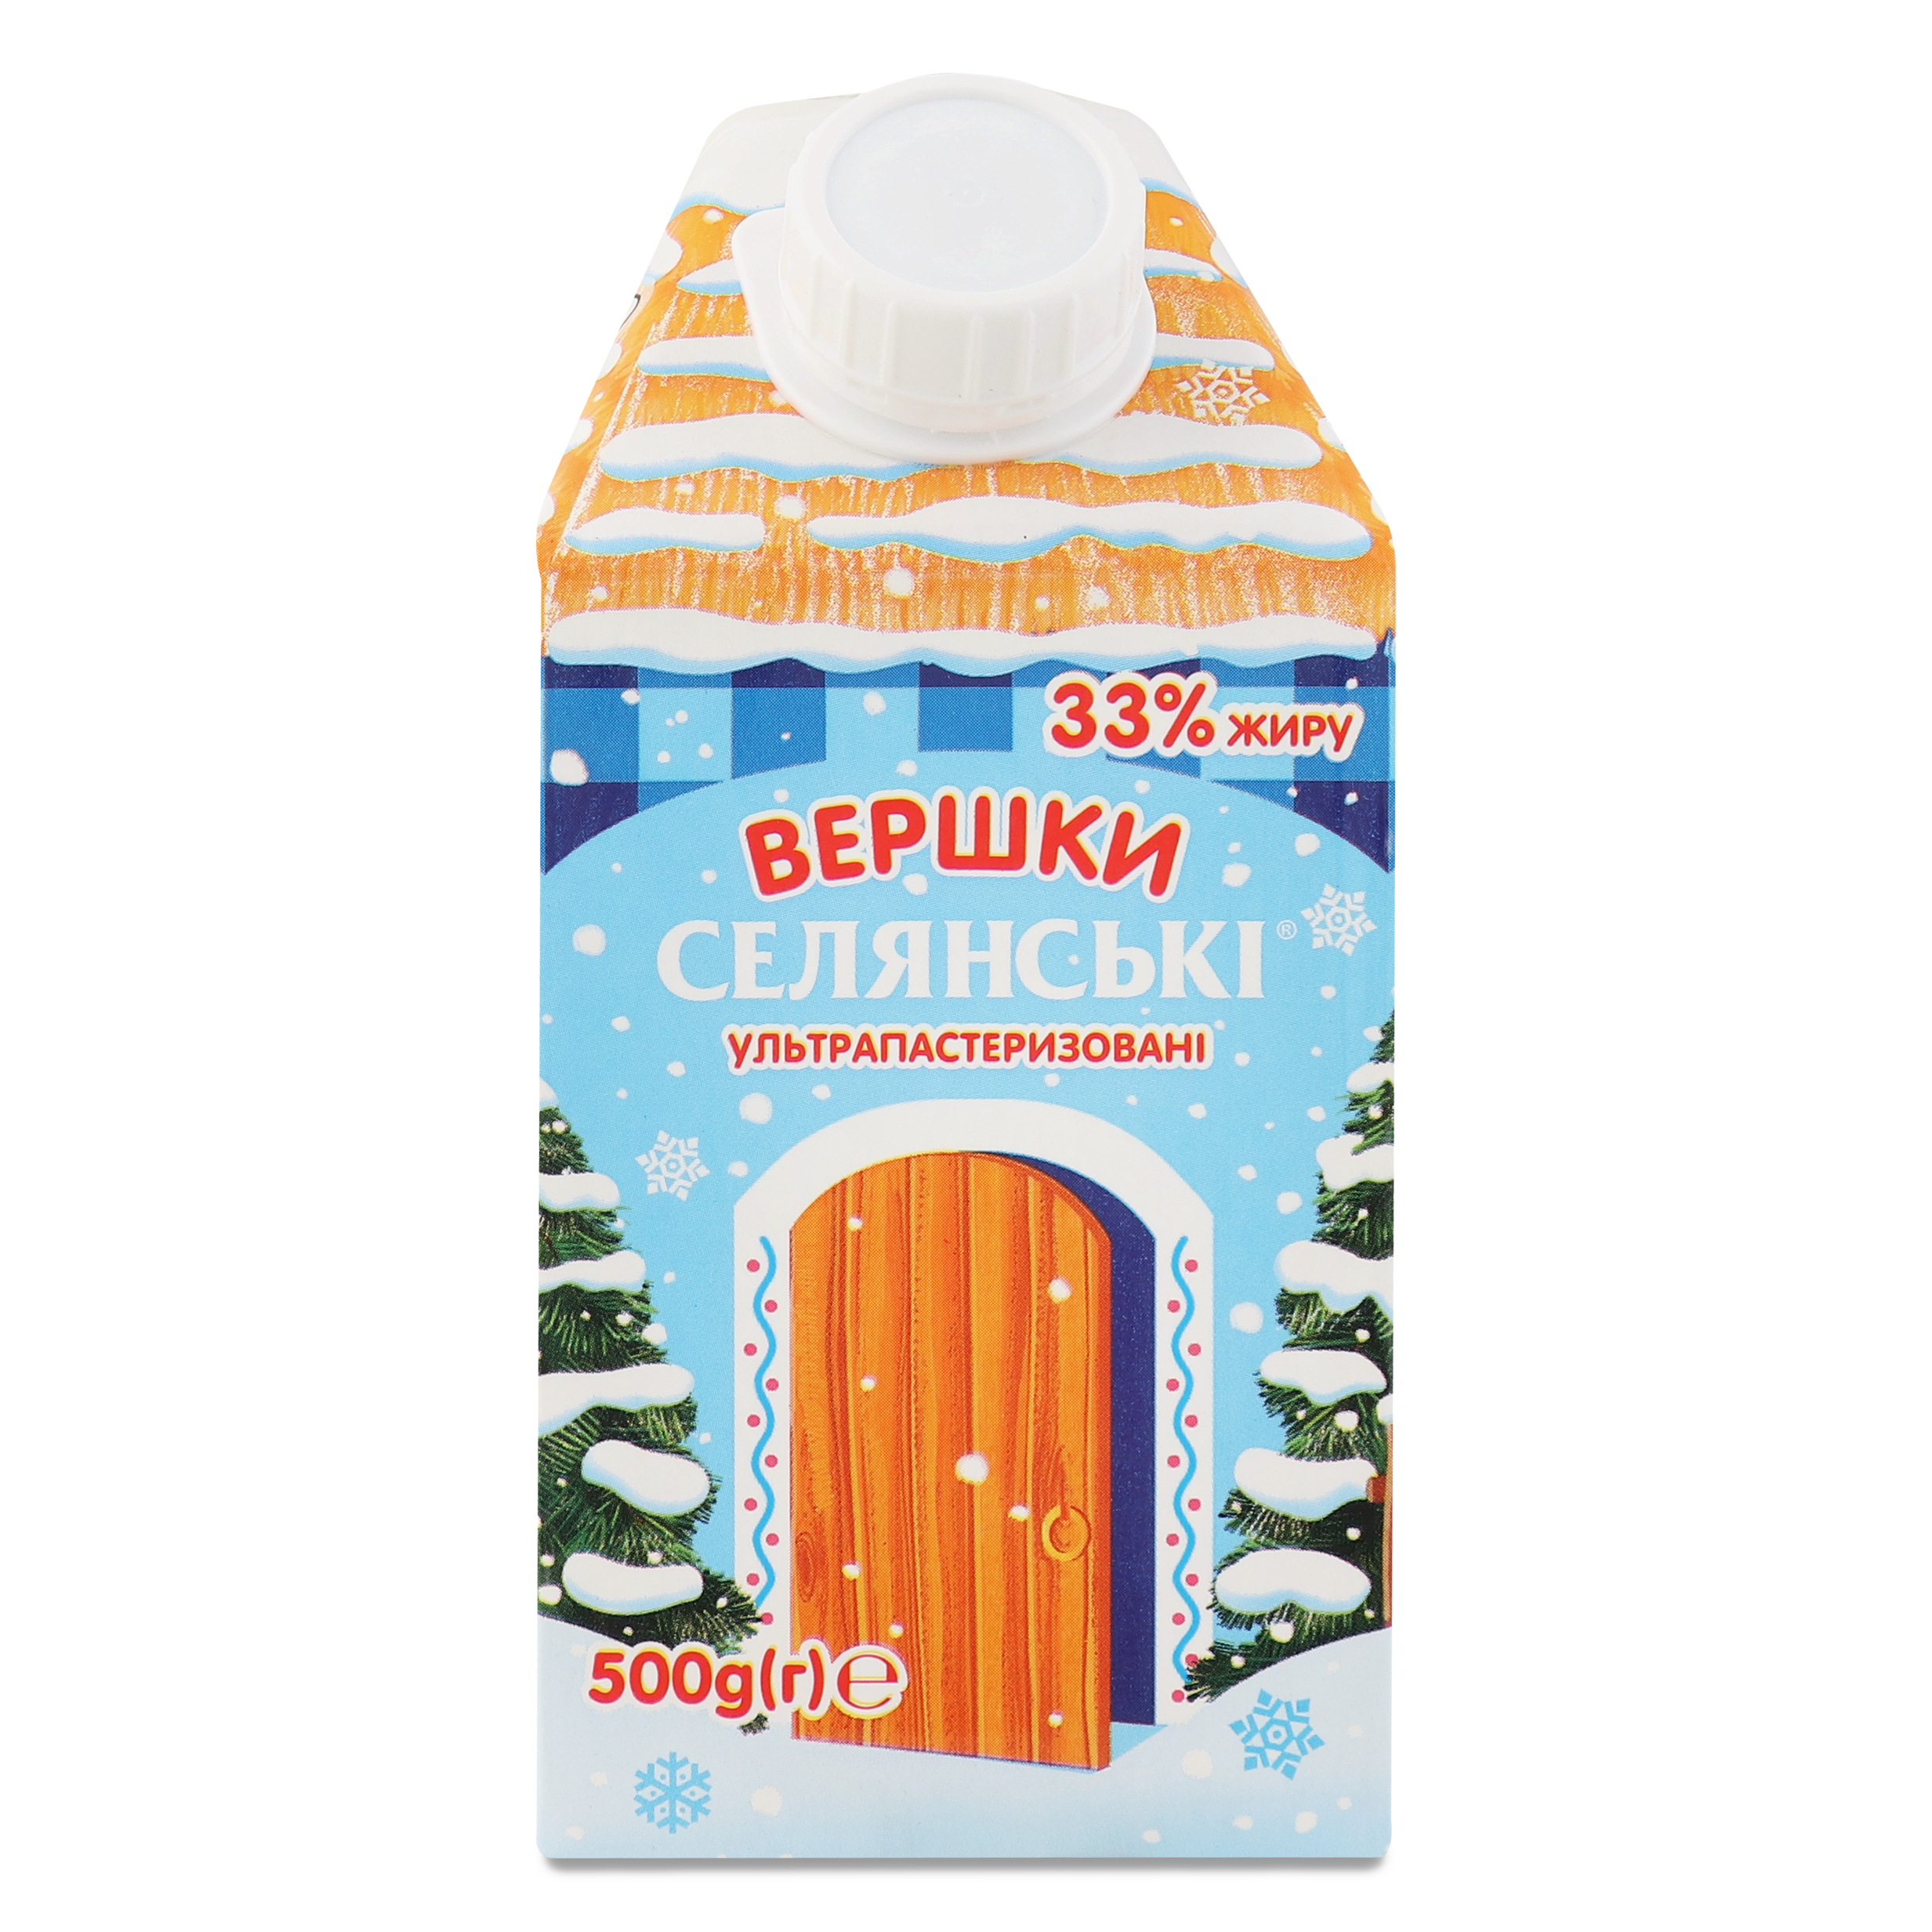 Cream Selyanski 33% 500g